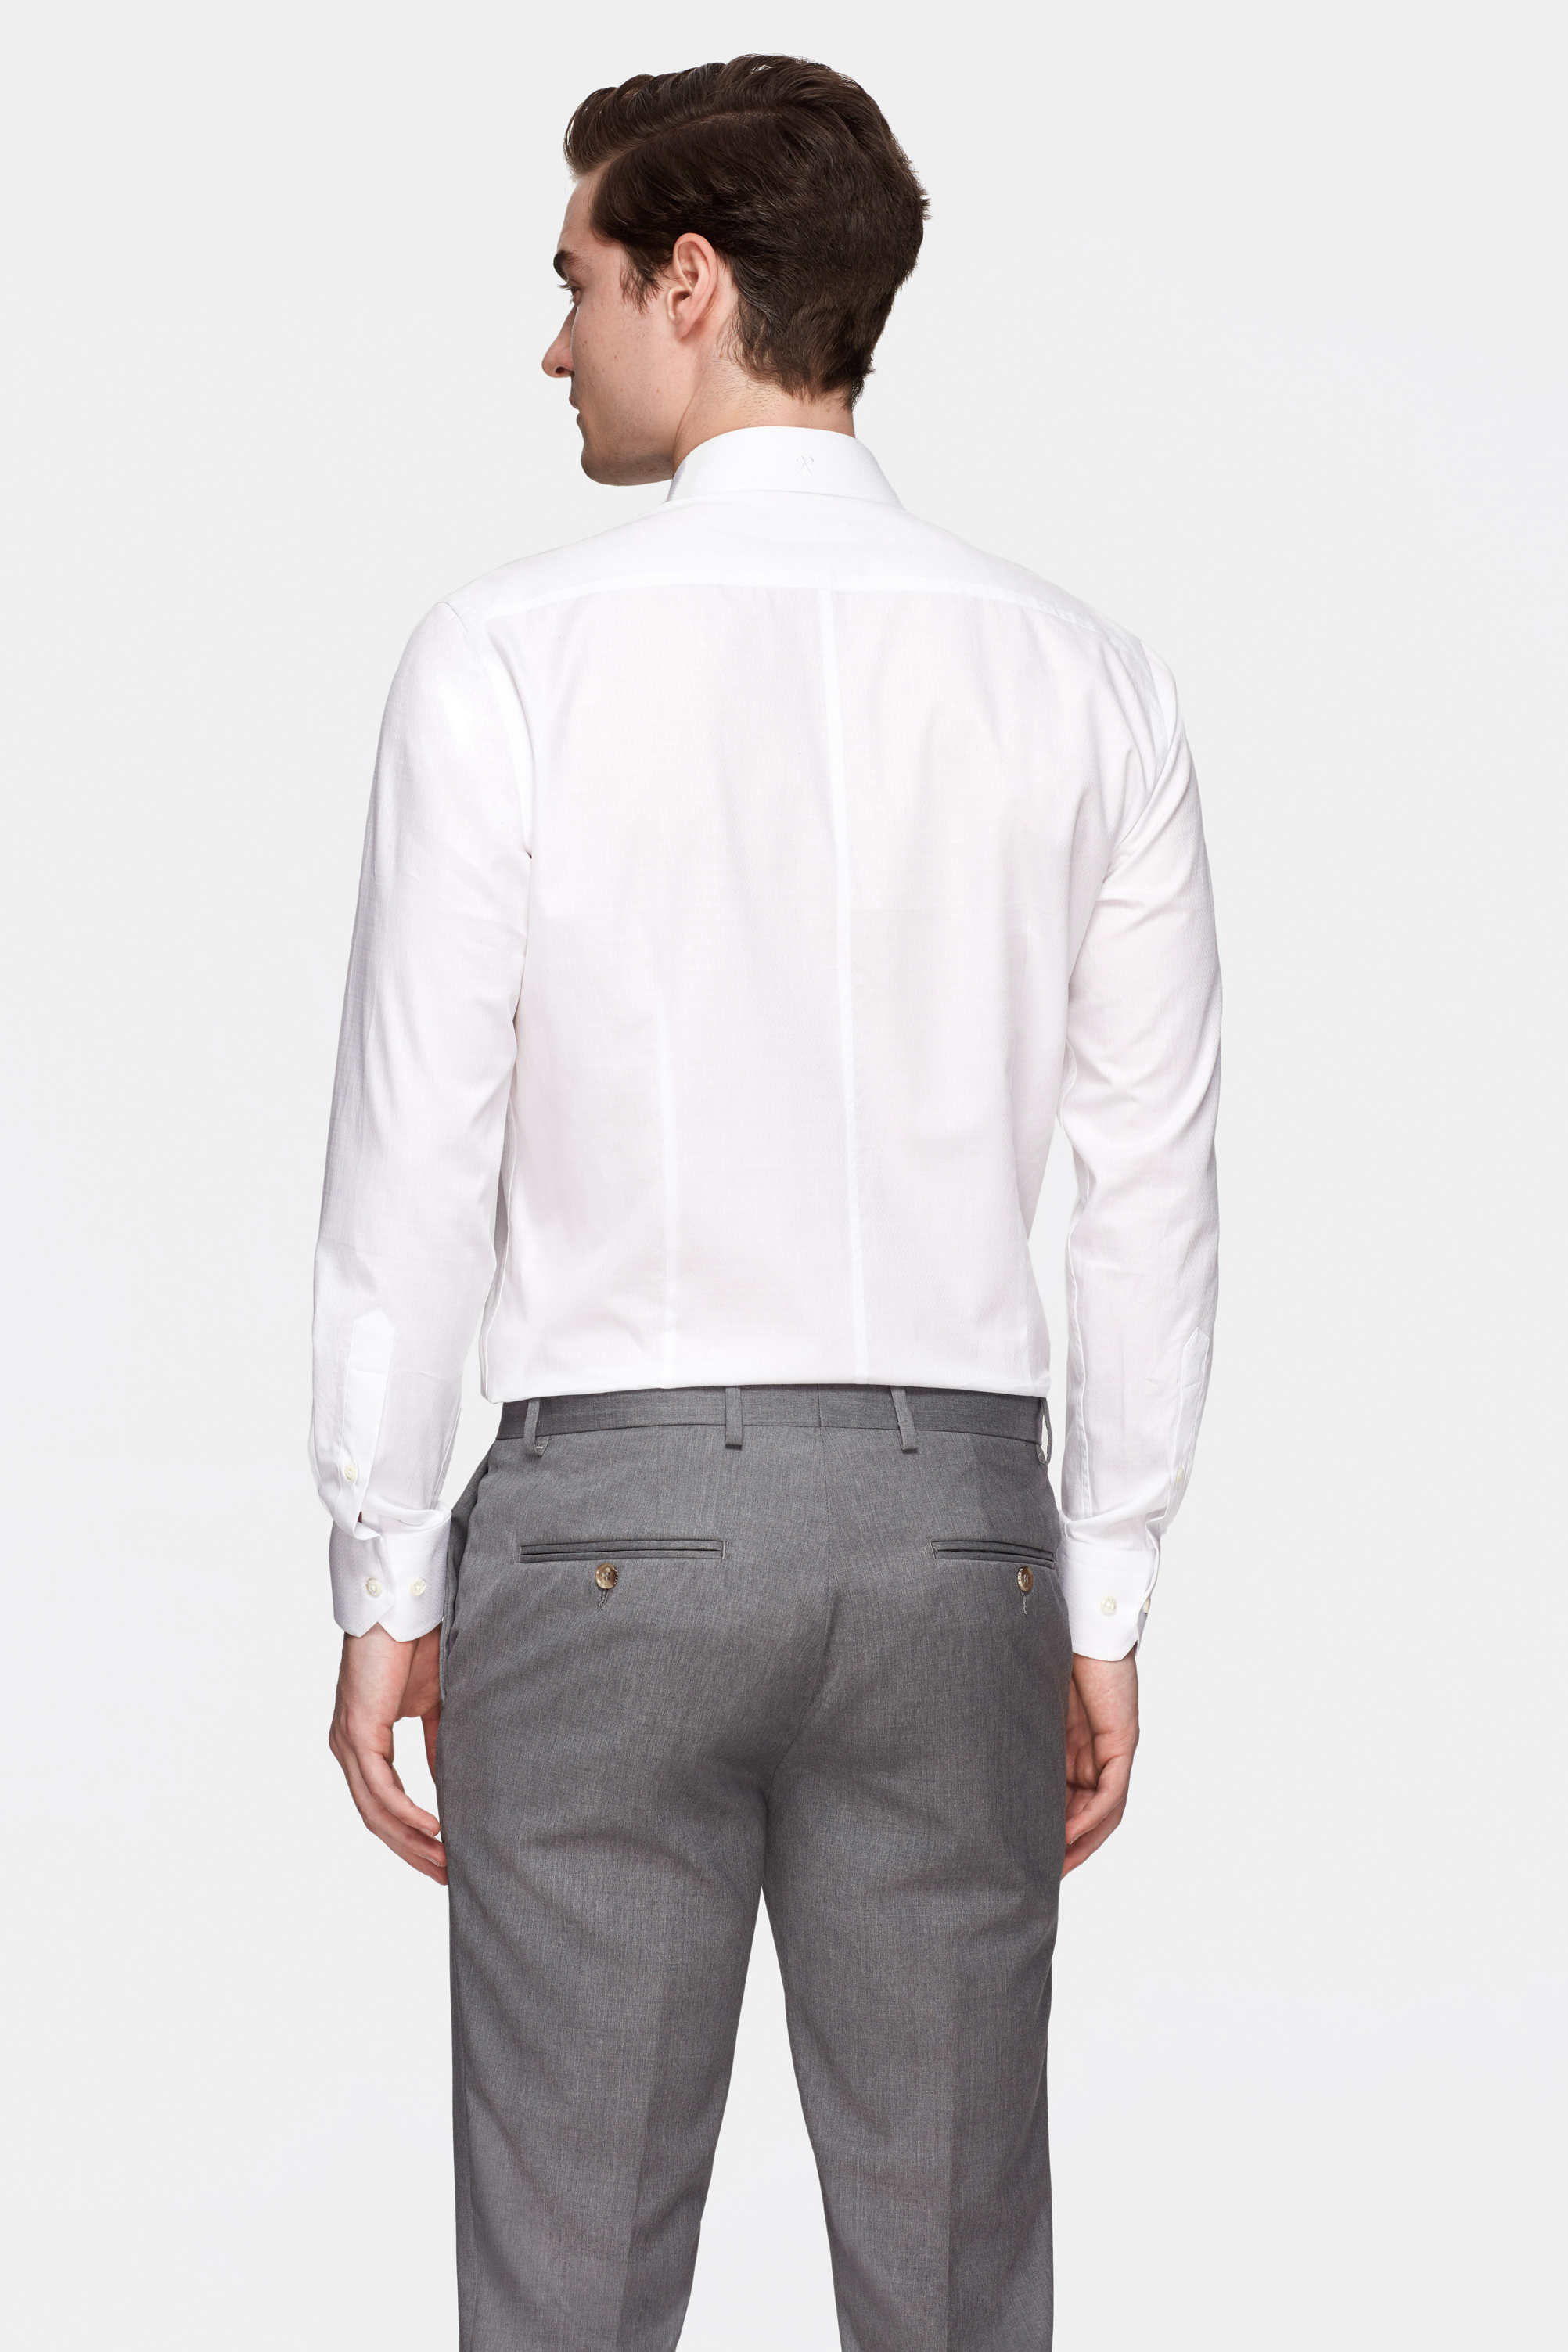 Damat Tween Damat Slim Fit Beyaz Desenli %100 Pamuk Gömlek. 3